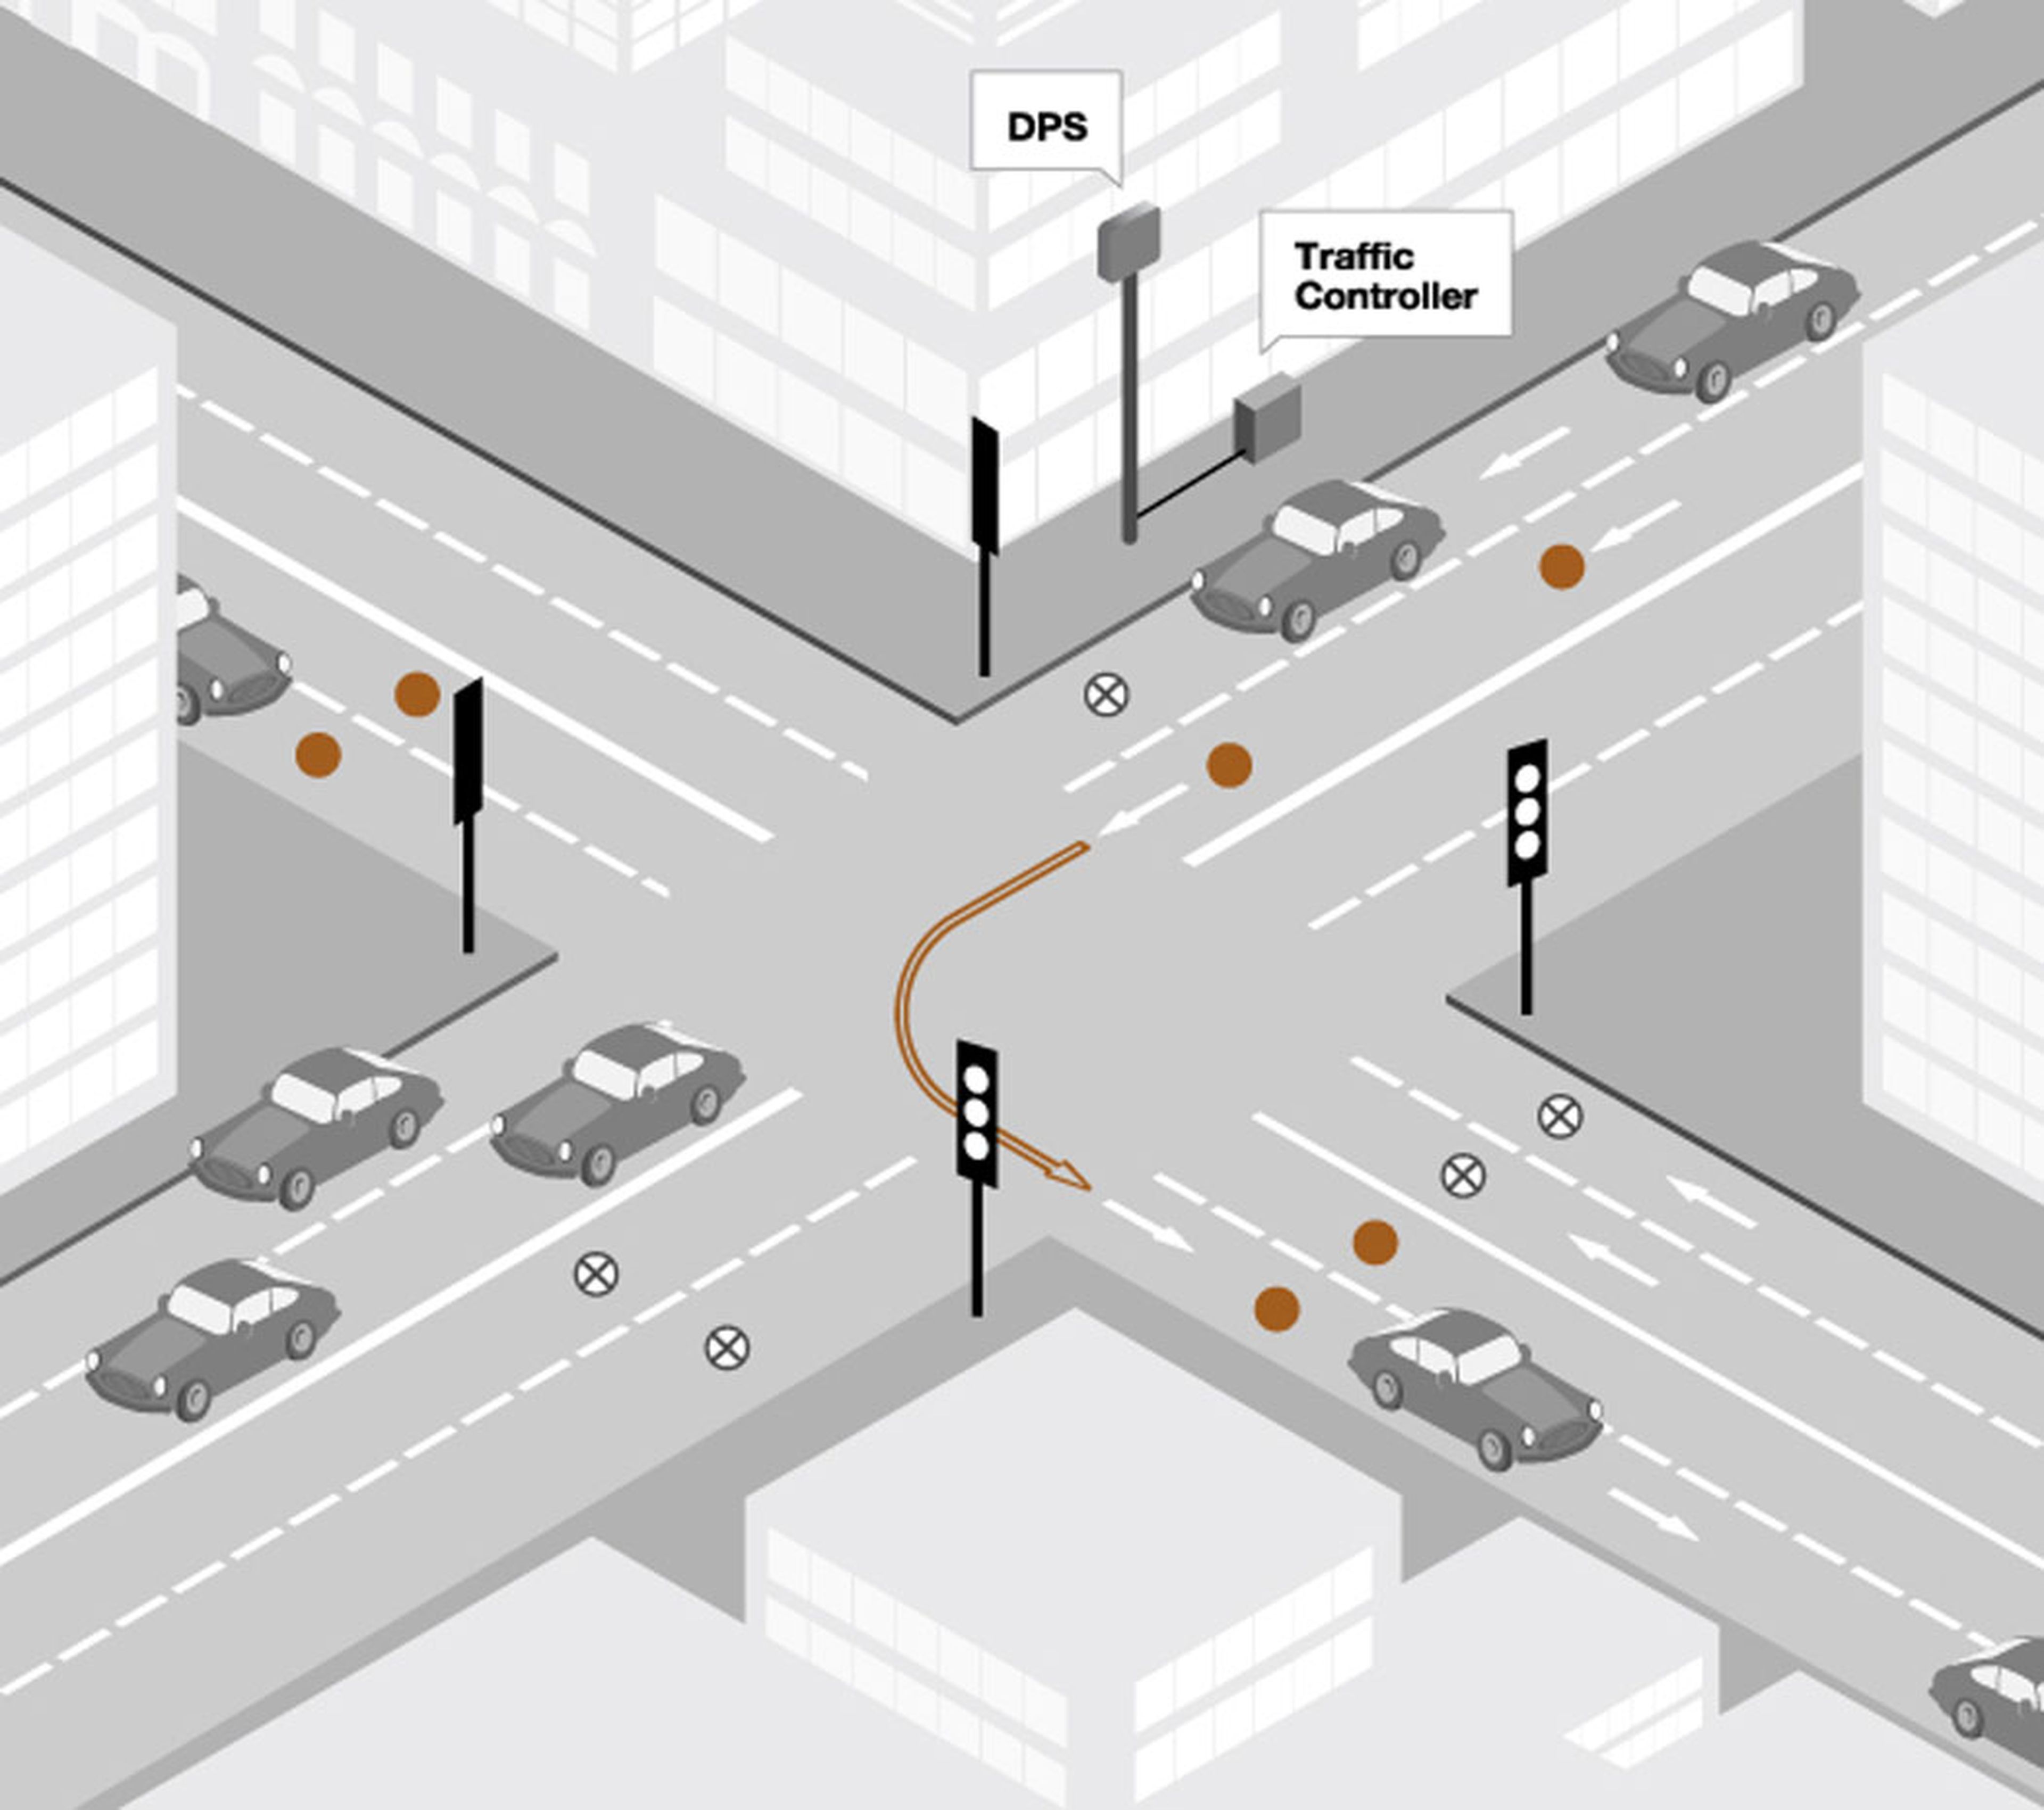 Ejemplo de una intersección regulada por semáforos en la que los sensores de Sensefields ayudarían a alargar los rojos o verdes en función del tráfico en cada sentido.